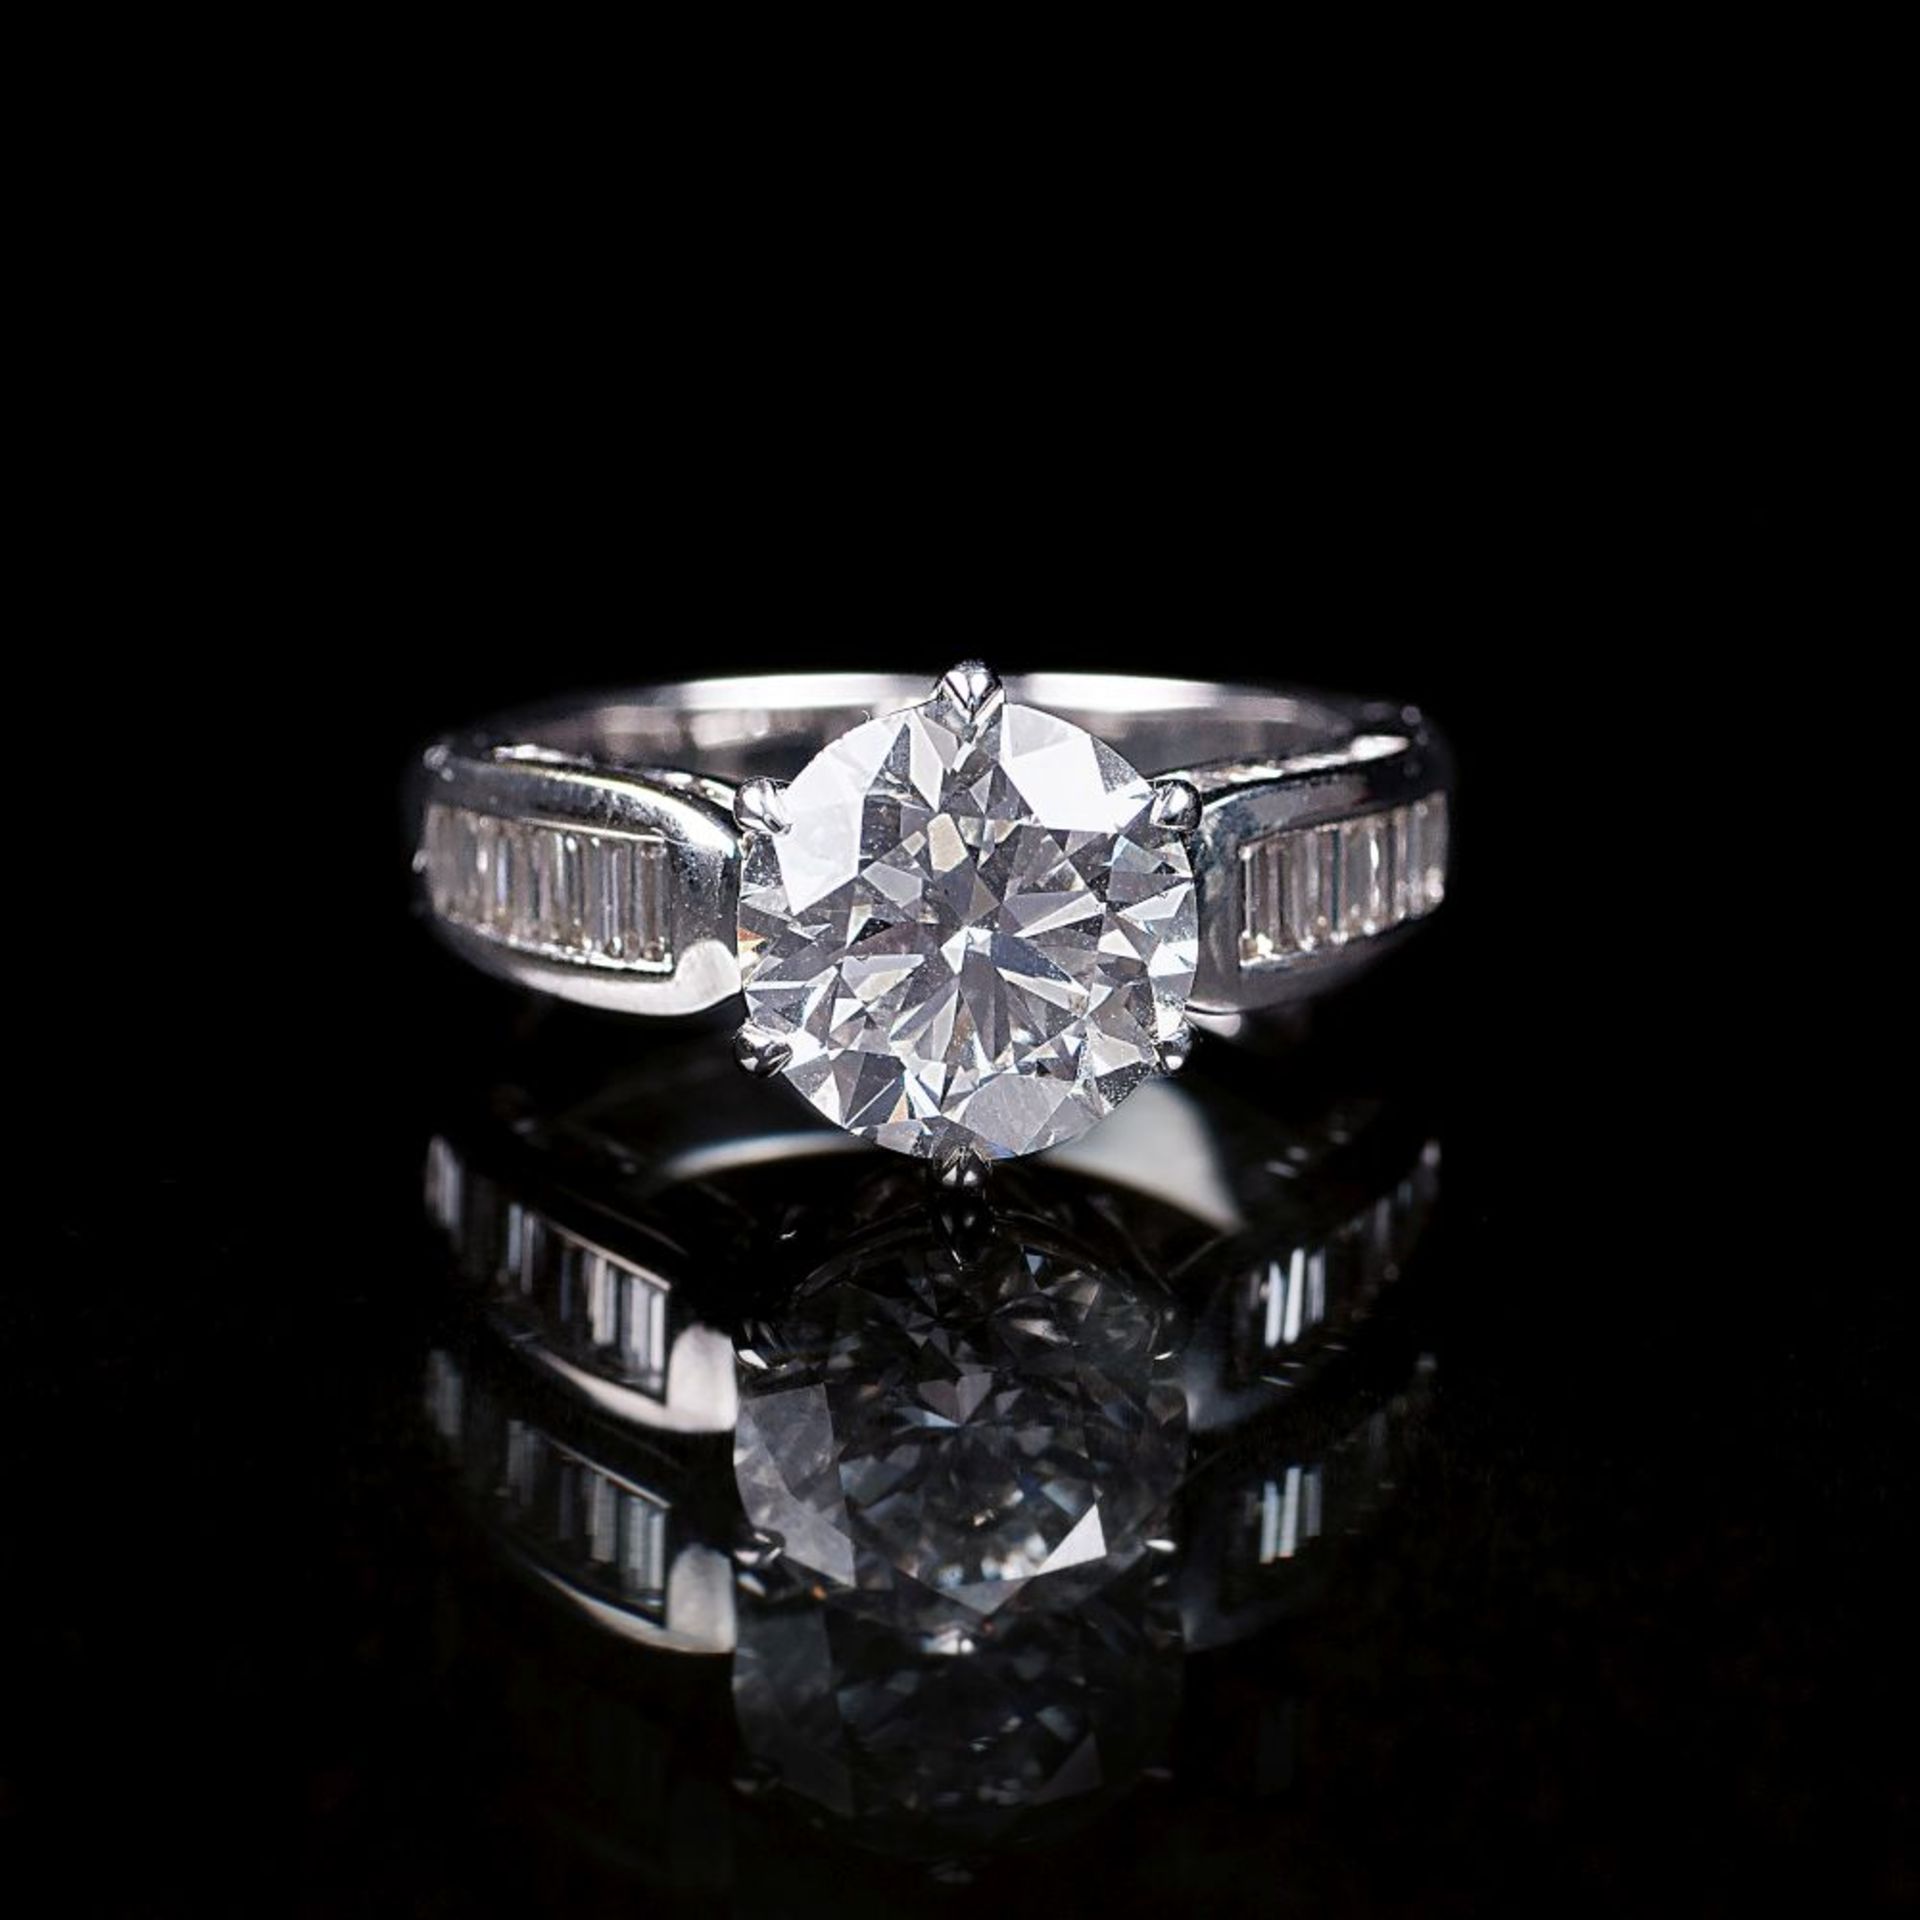 Diamant-Ring mit Solitär. 18 kt. WG, gest. In sechsfacher Krappenfassung der Solitär im